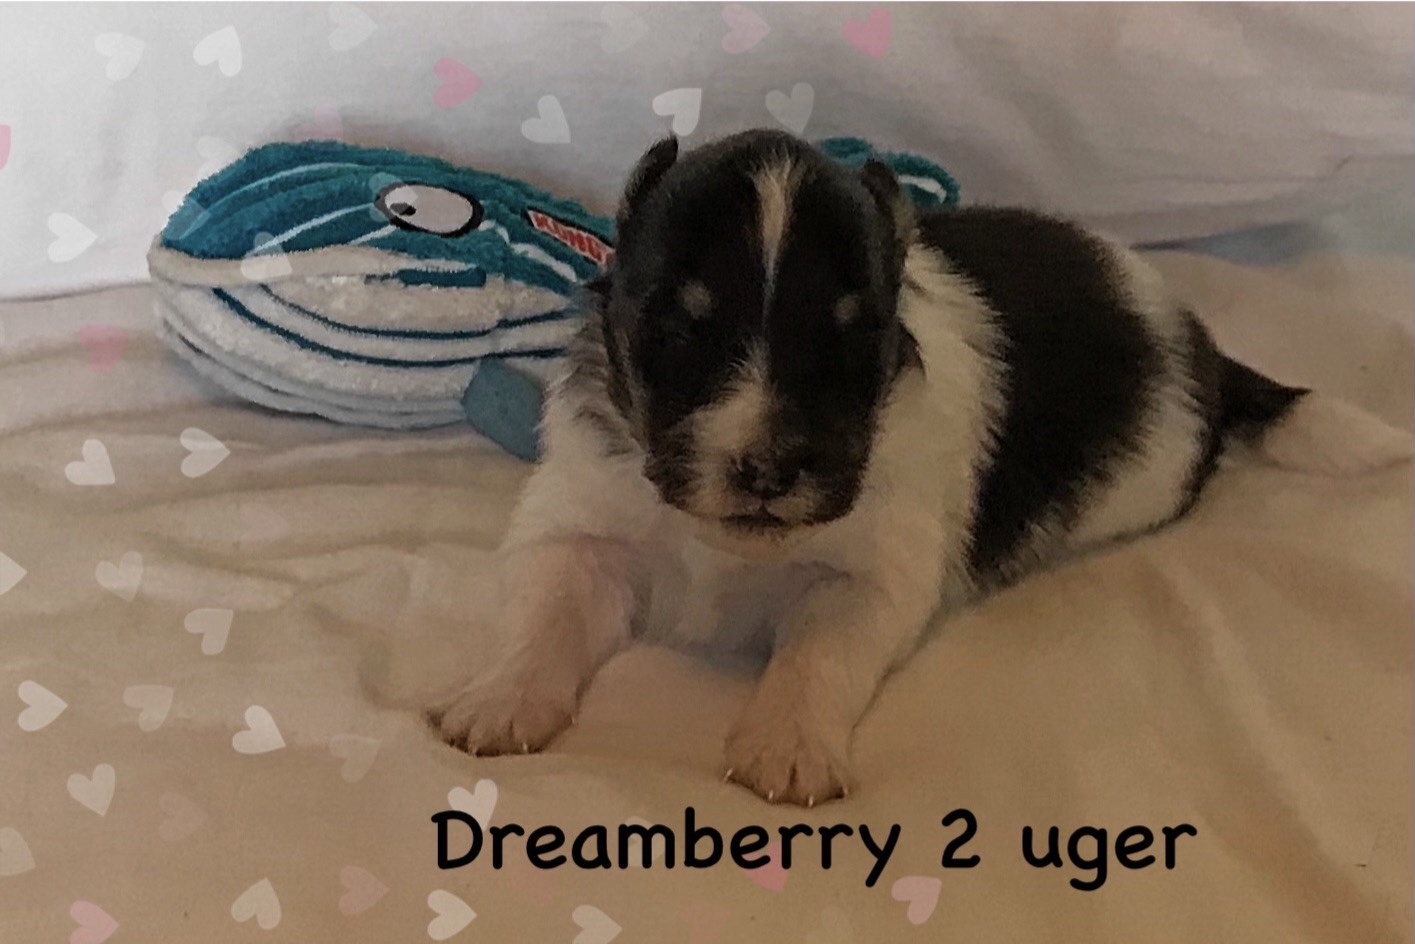 Dreamberry med sin fine bamse.